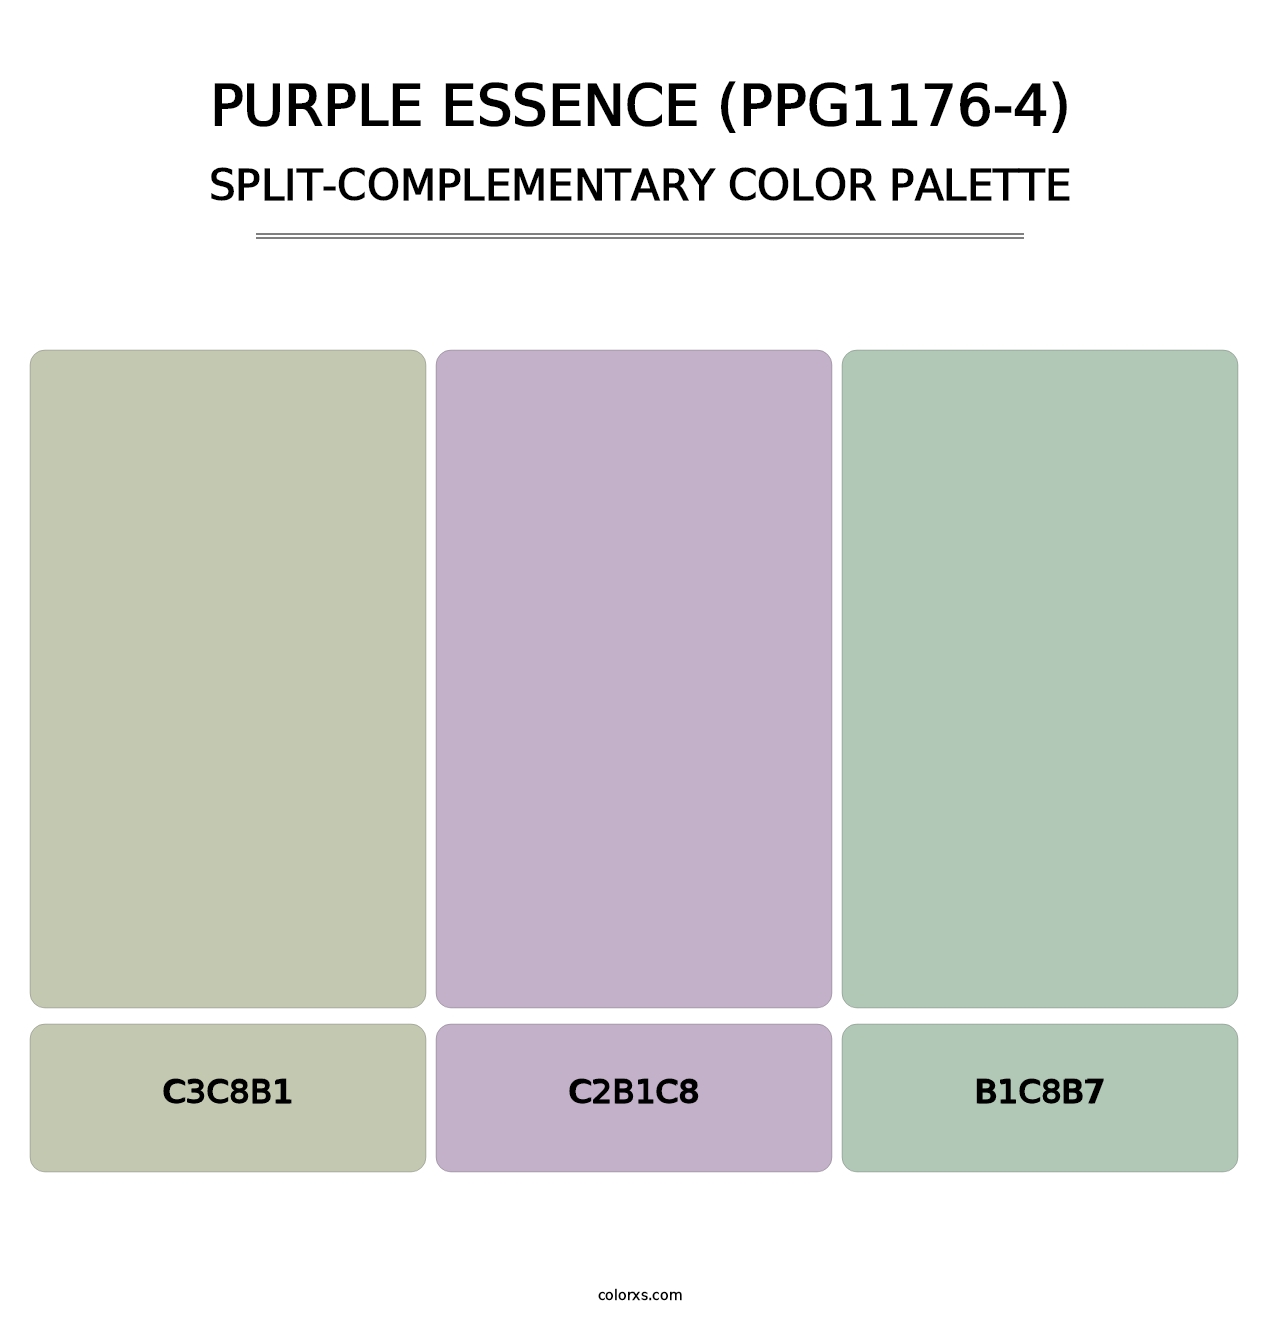 Purple Essence (PPG1176-4) - Split-Complementary Color Palette